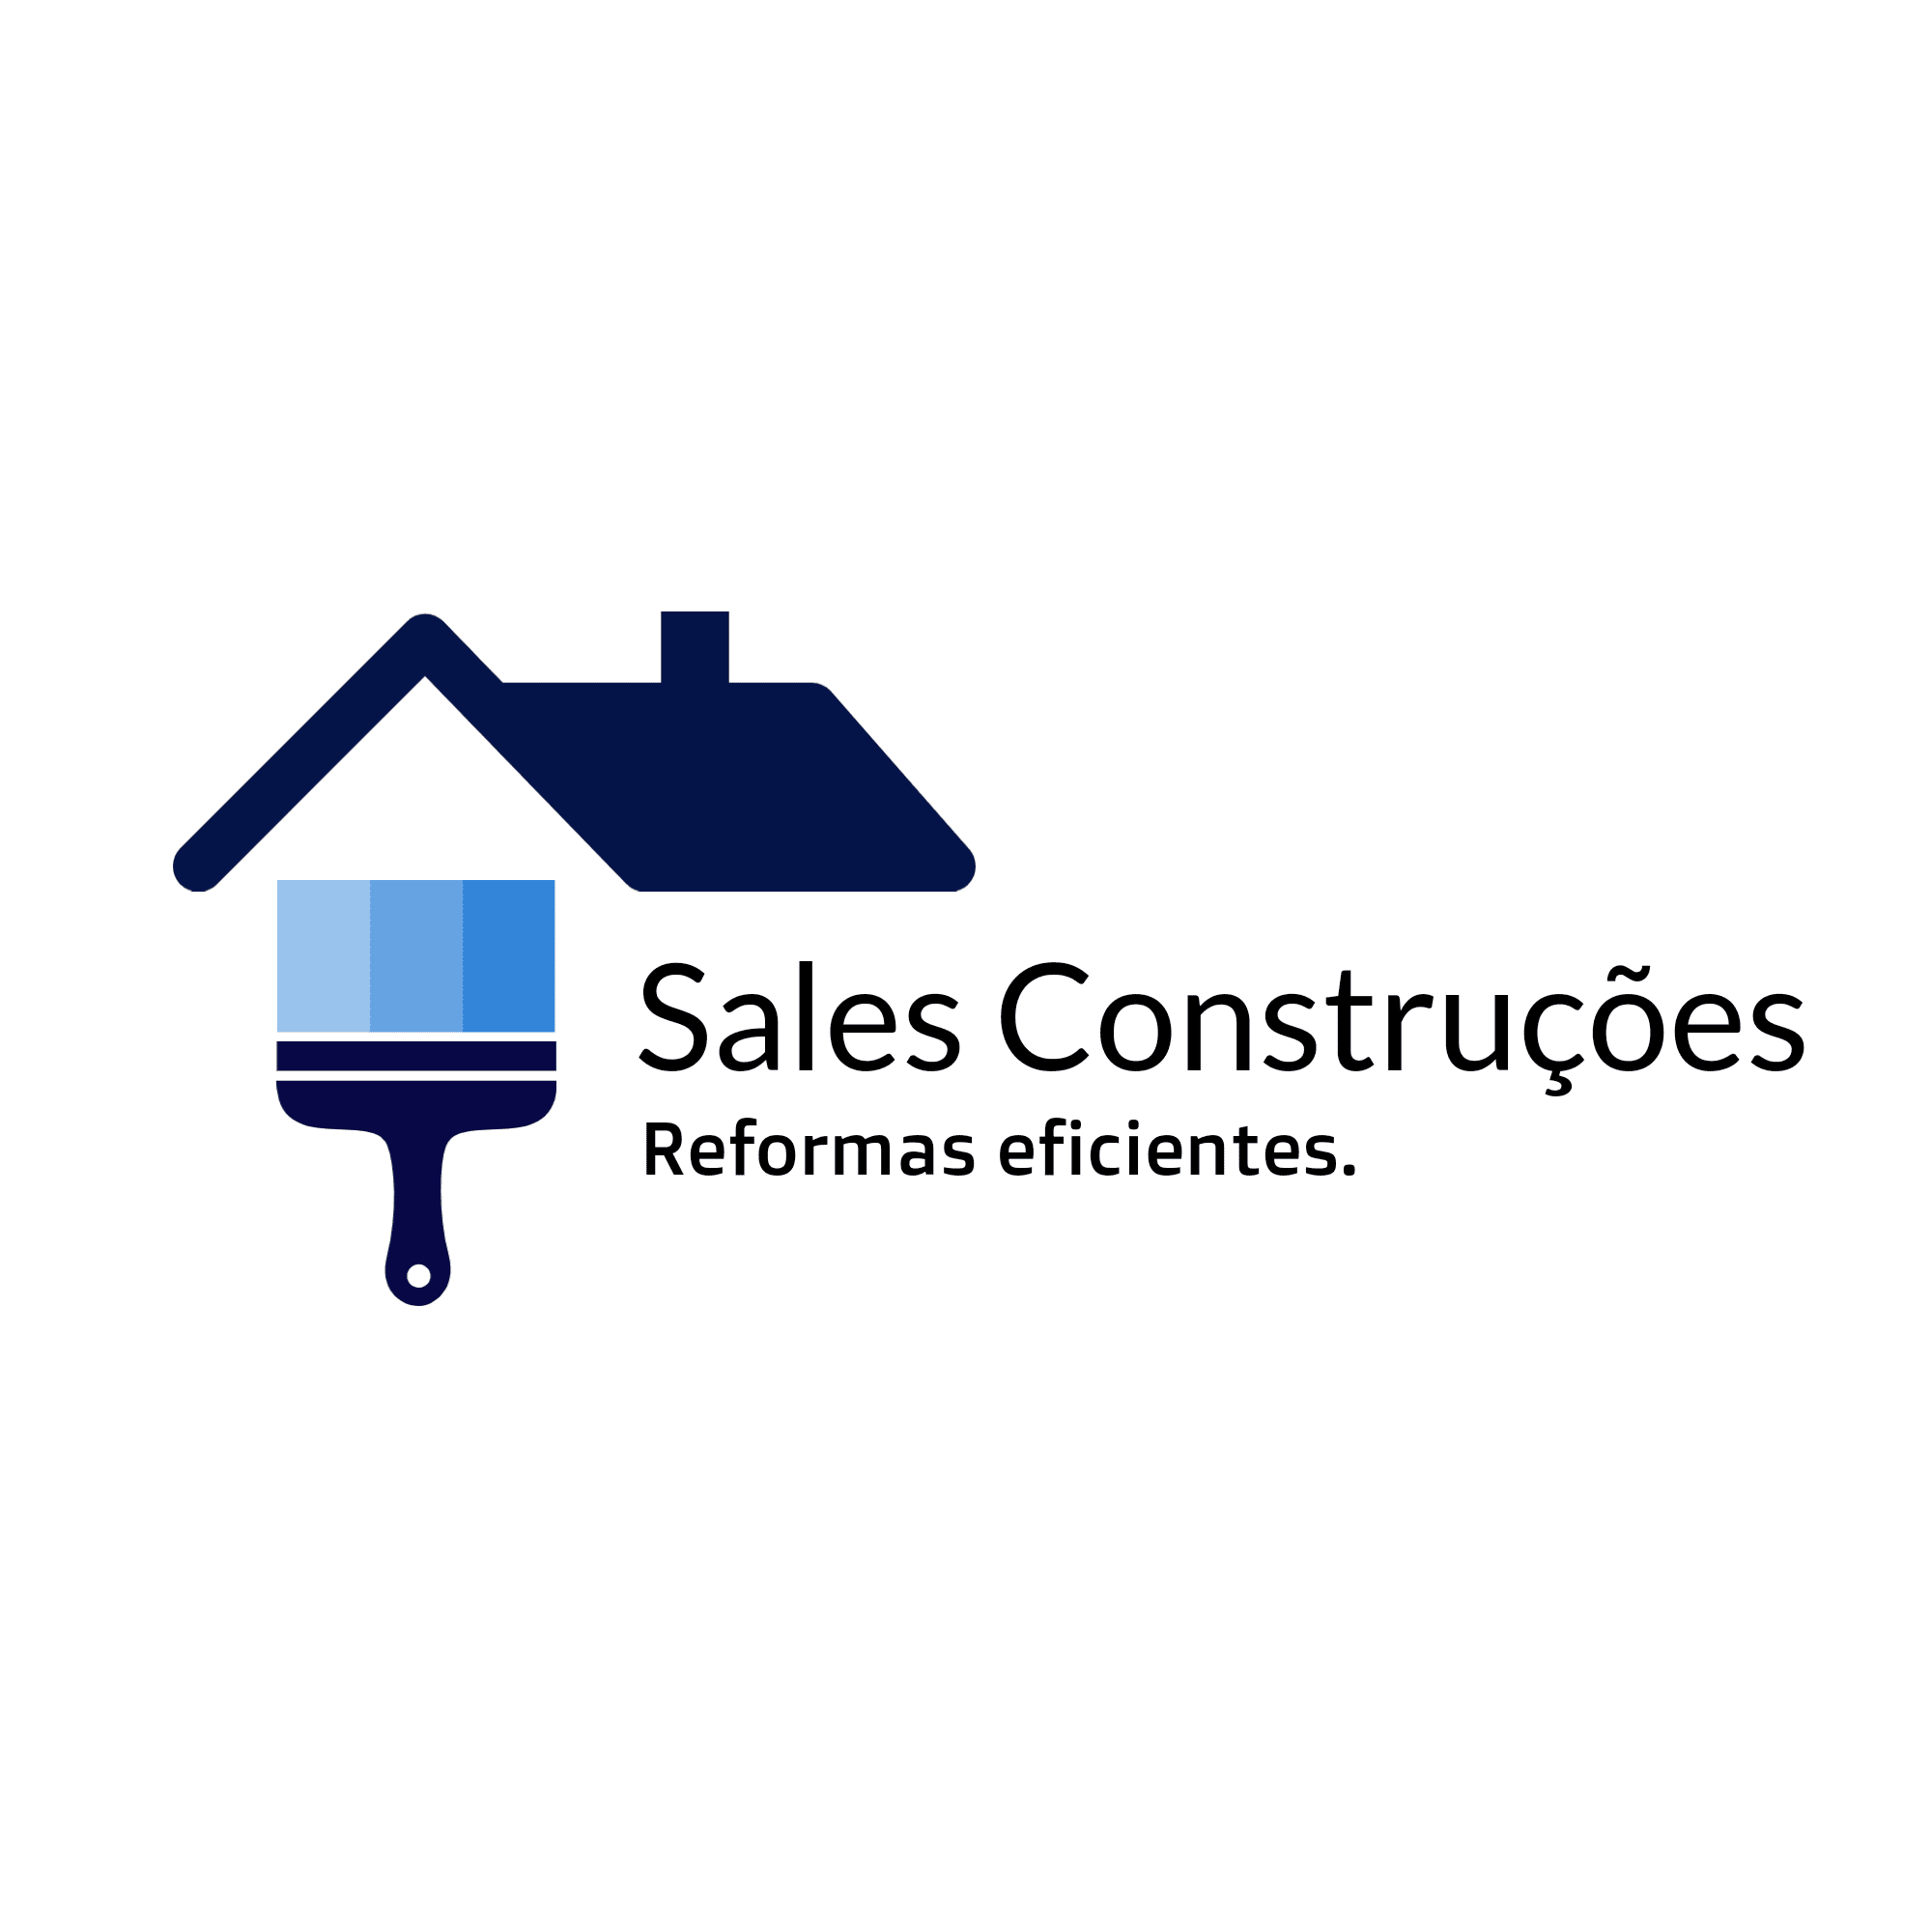 Sales Construções